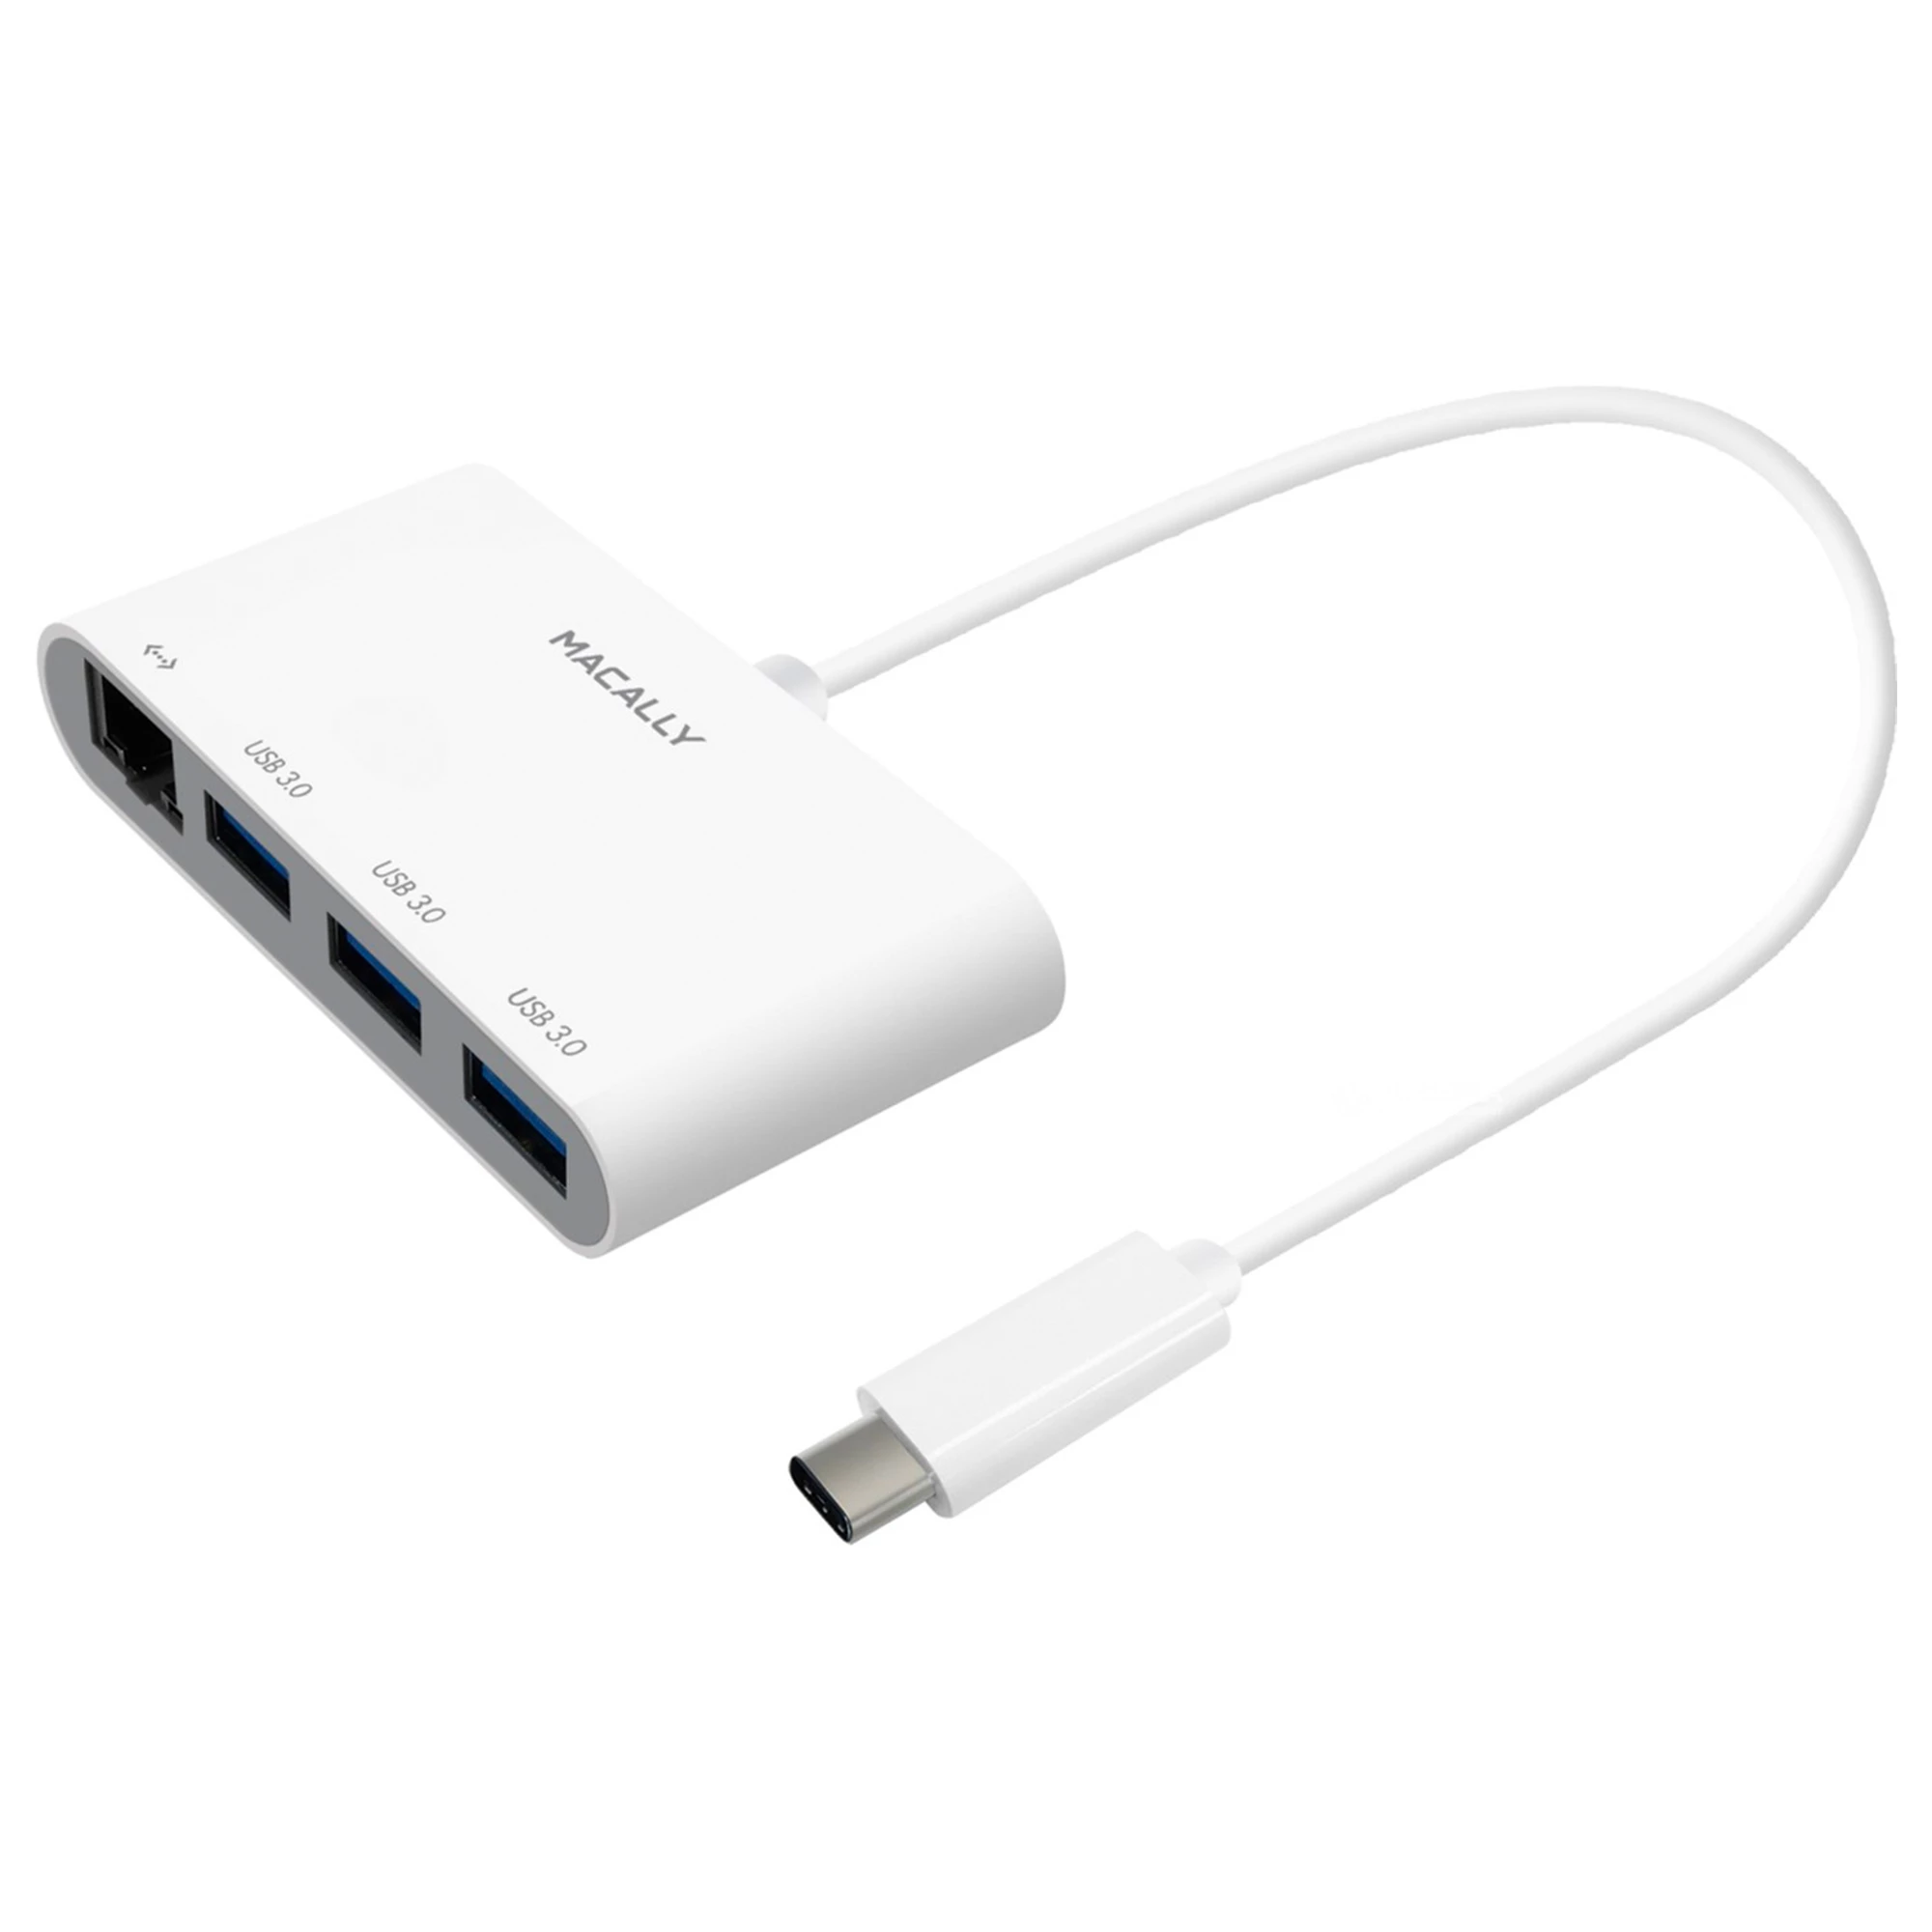 Адаптер Macally USB-C to USB-A hub with Ethernet (UCHUB3GB)